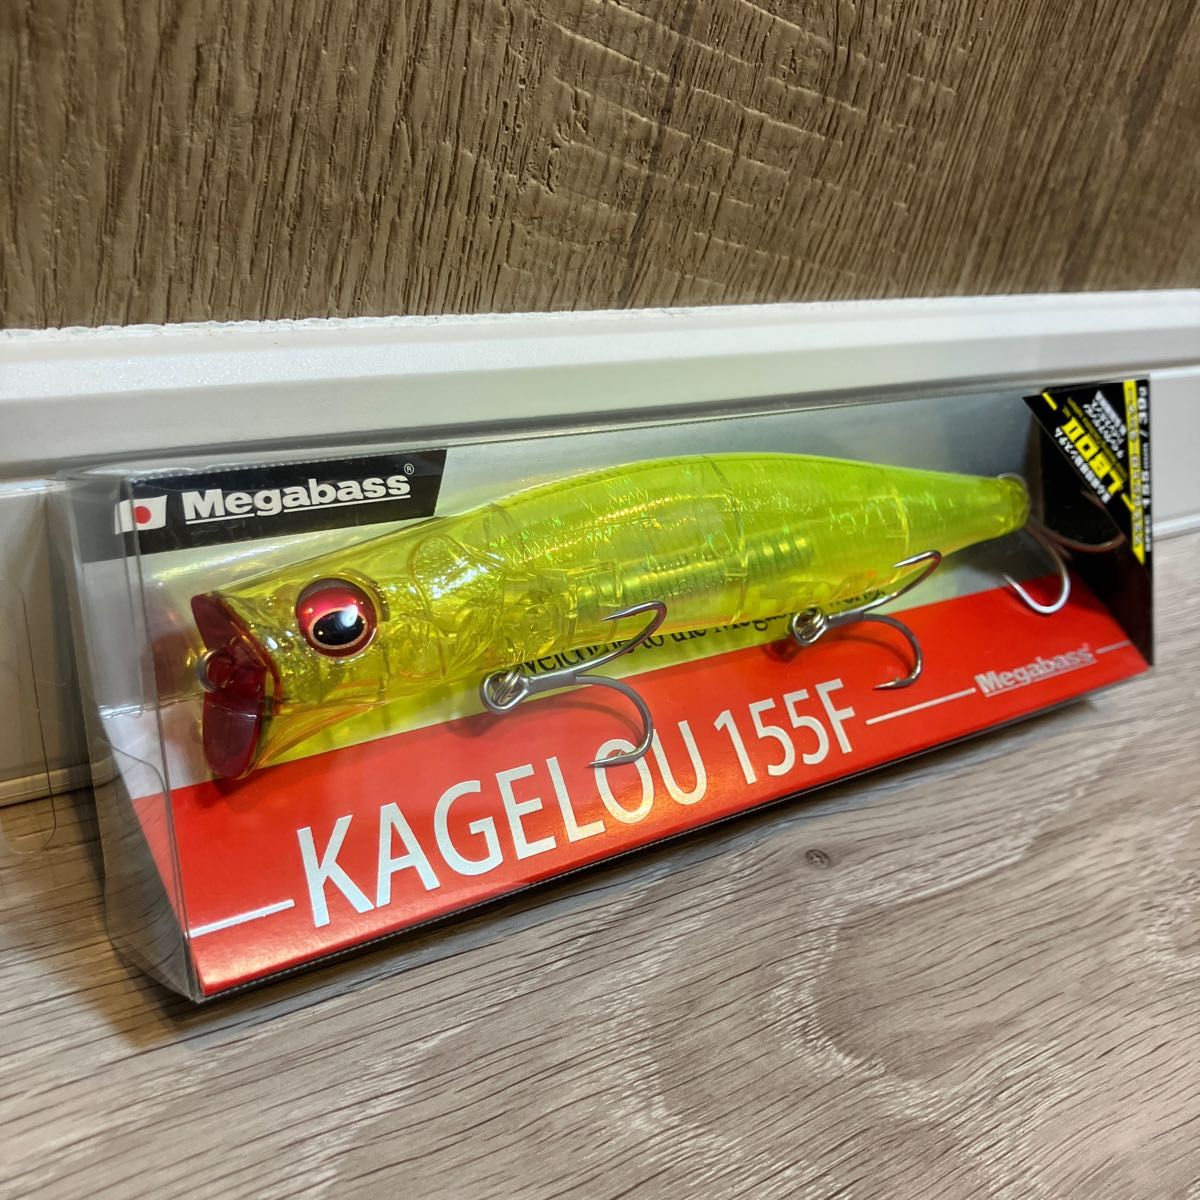 メガバス (Megabass) KAGELOU (カゲロウ) 155F 人気カラー